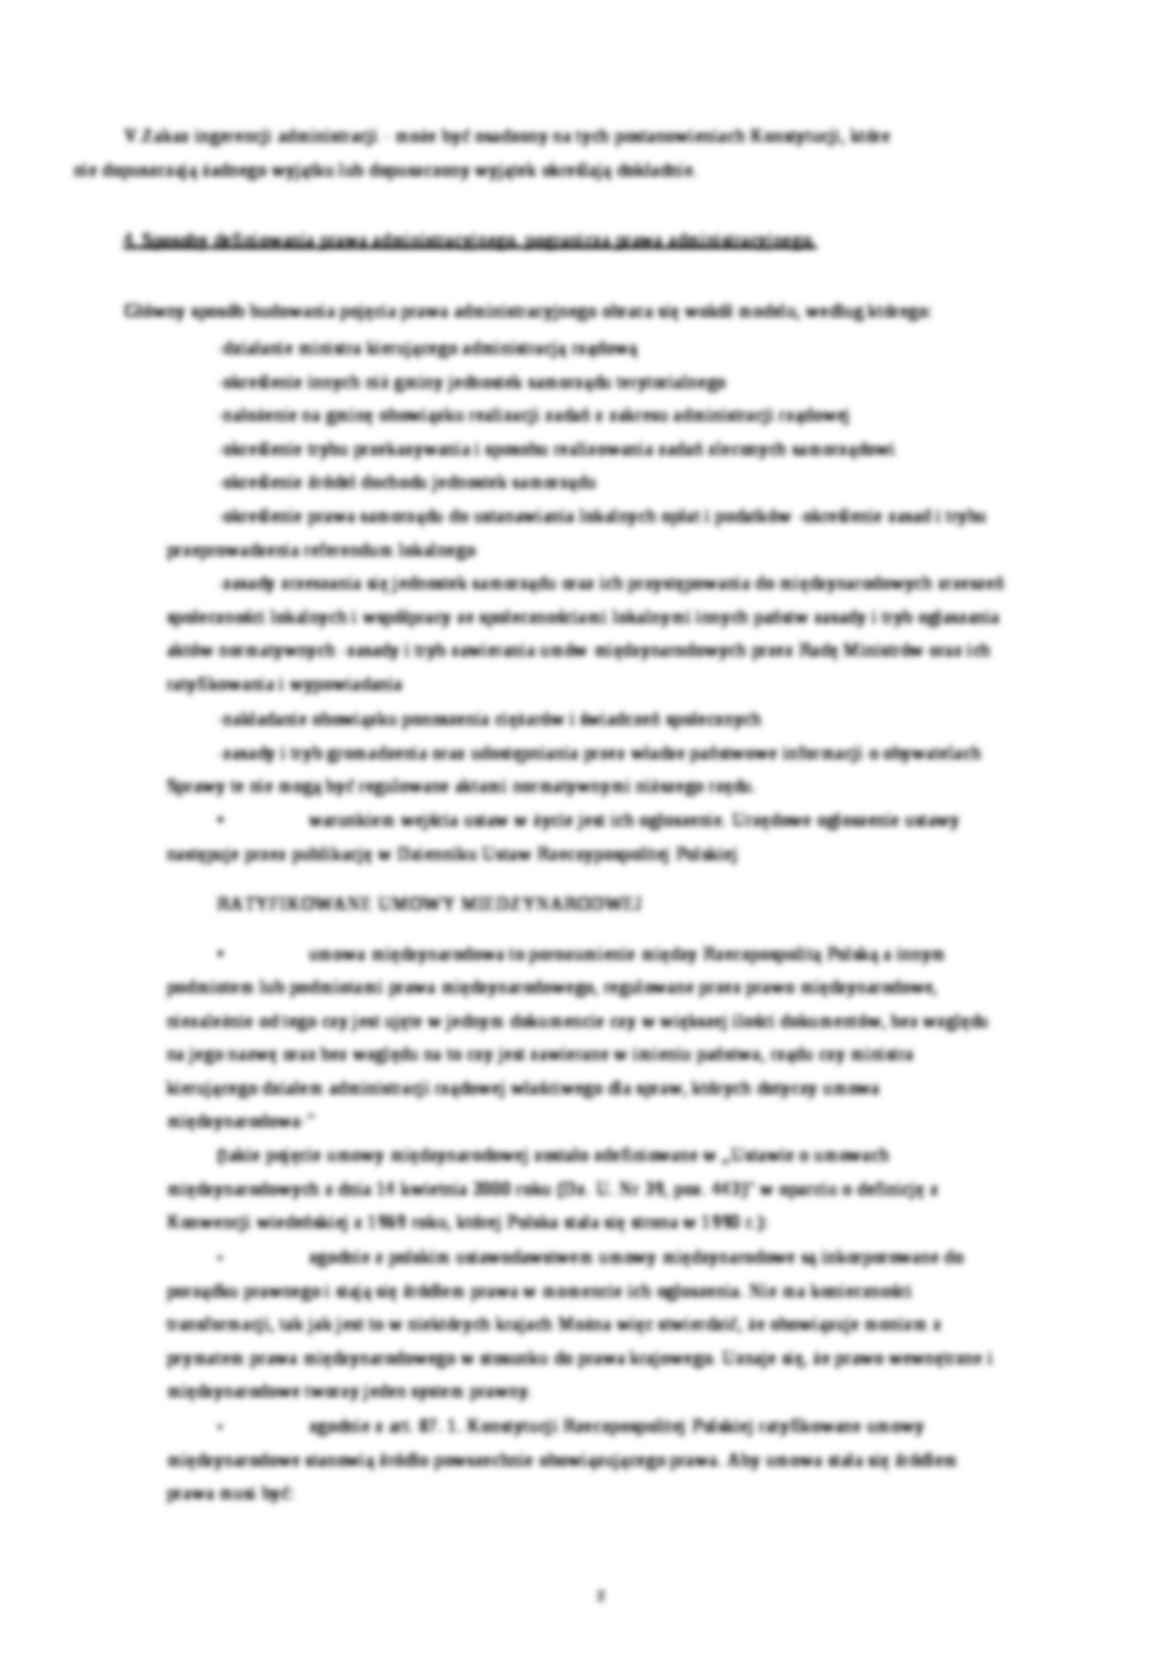 Prawo administracyjne - notatki z wykładów - strona 2